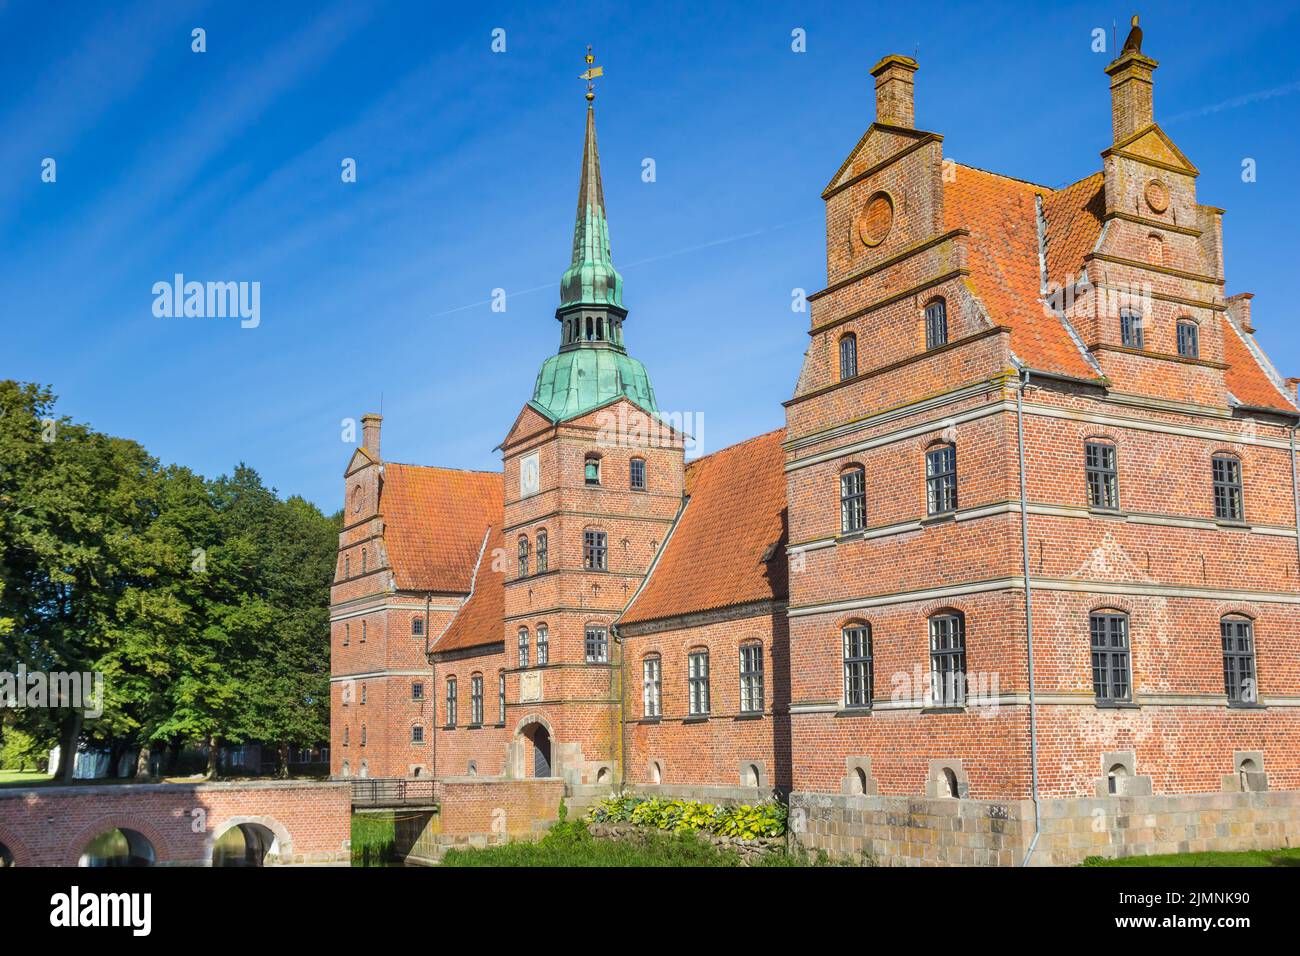 Historic red brick castle in Rosenholm, Denmark Stock Photo